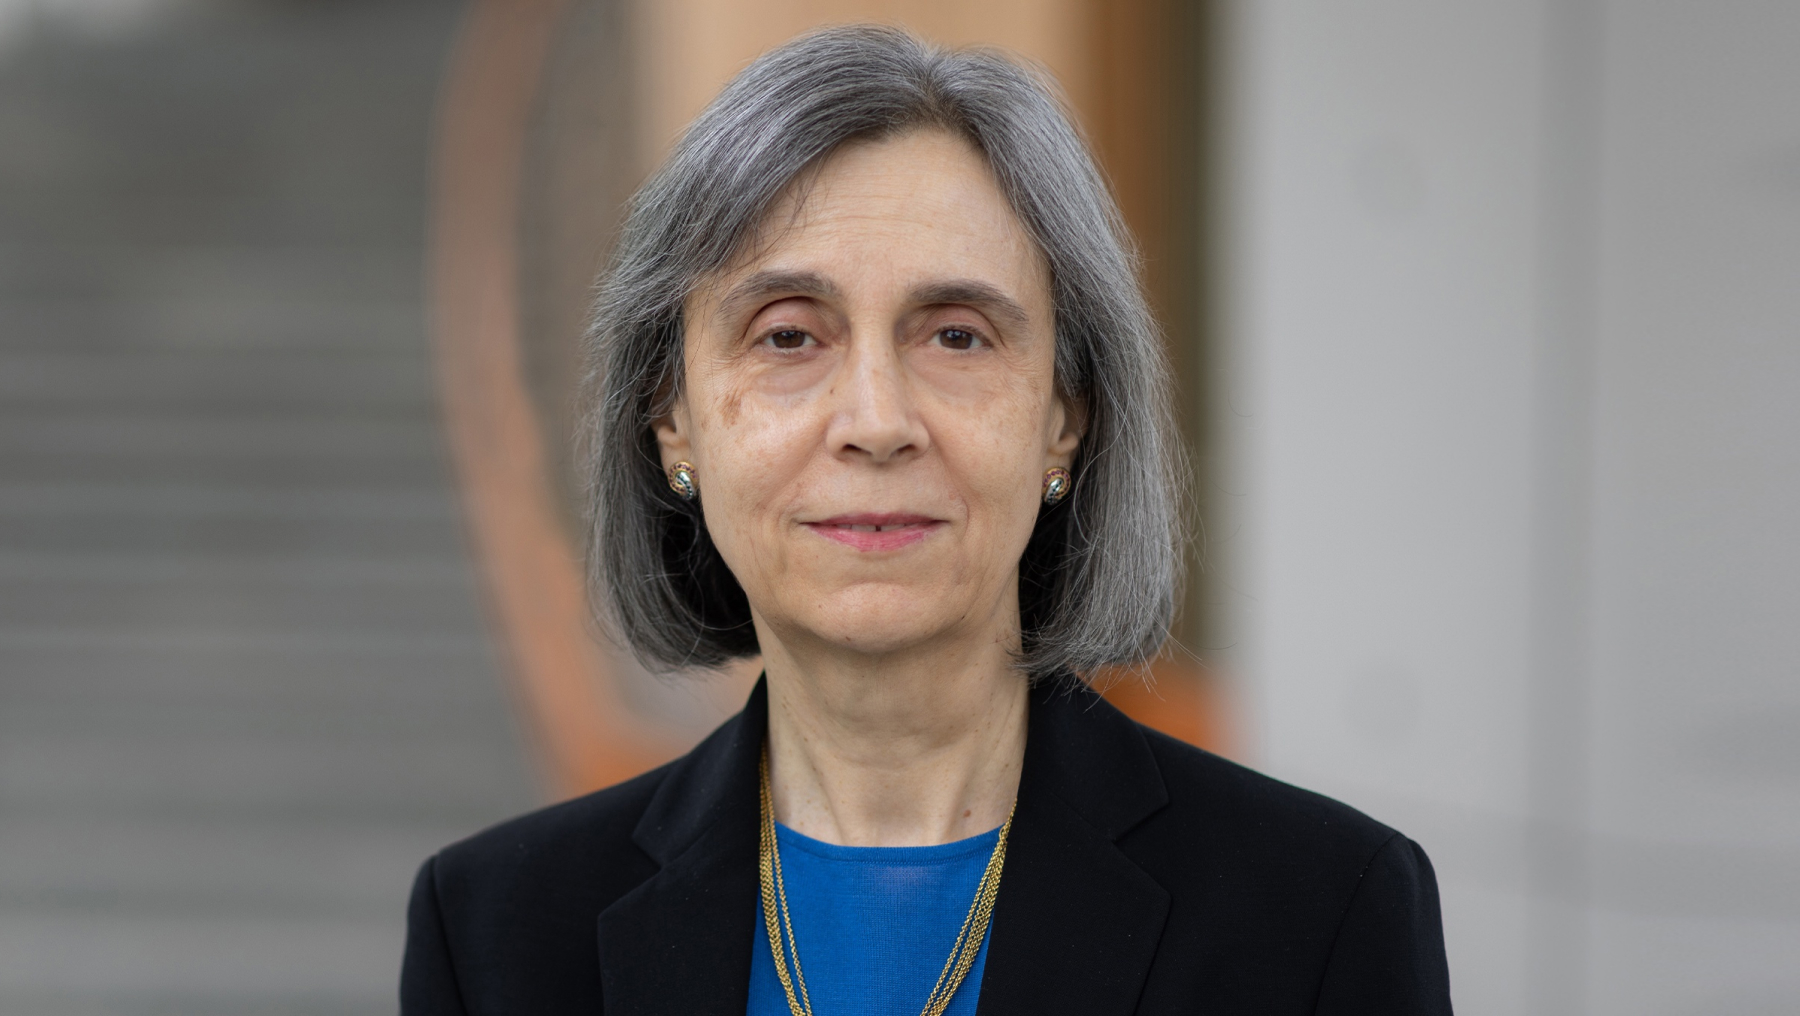 Adilia Hormigo, MD, PhD